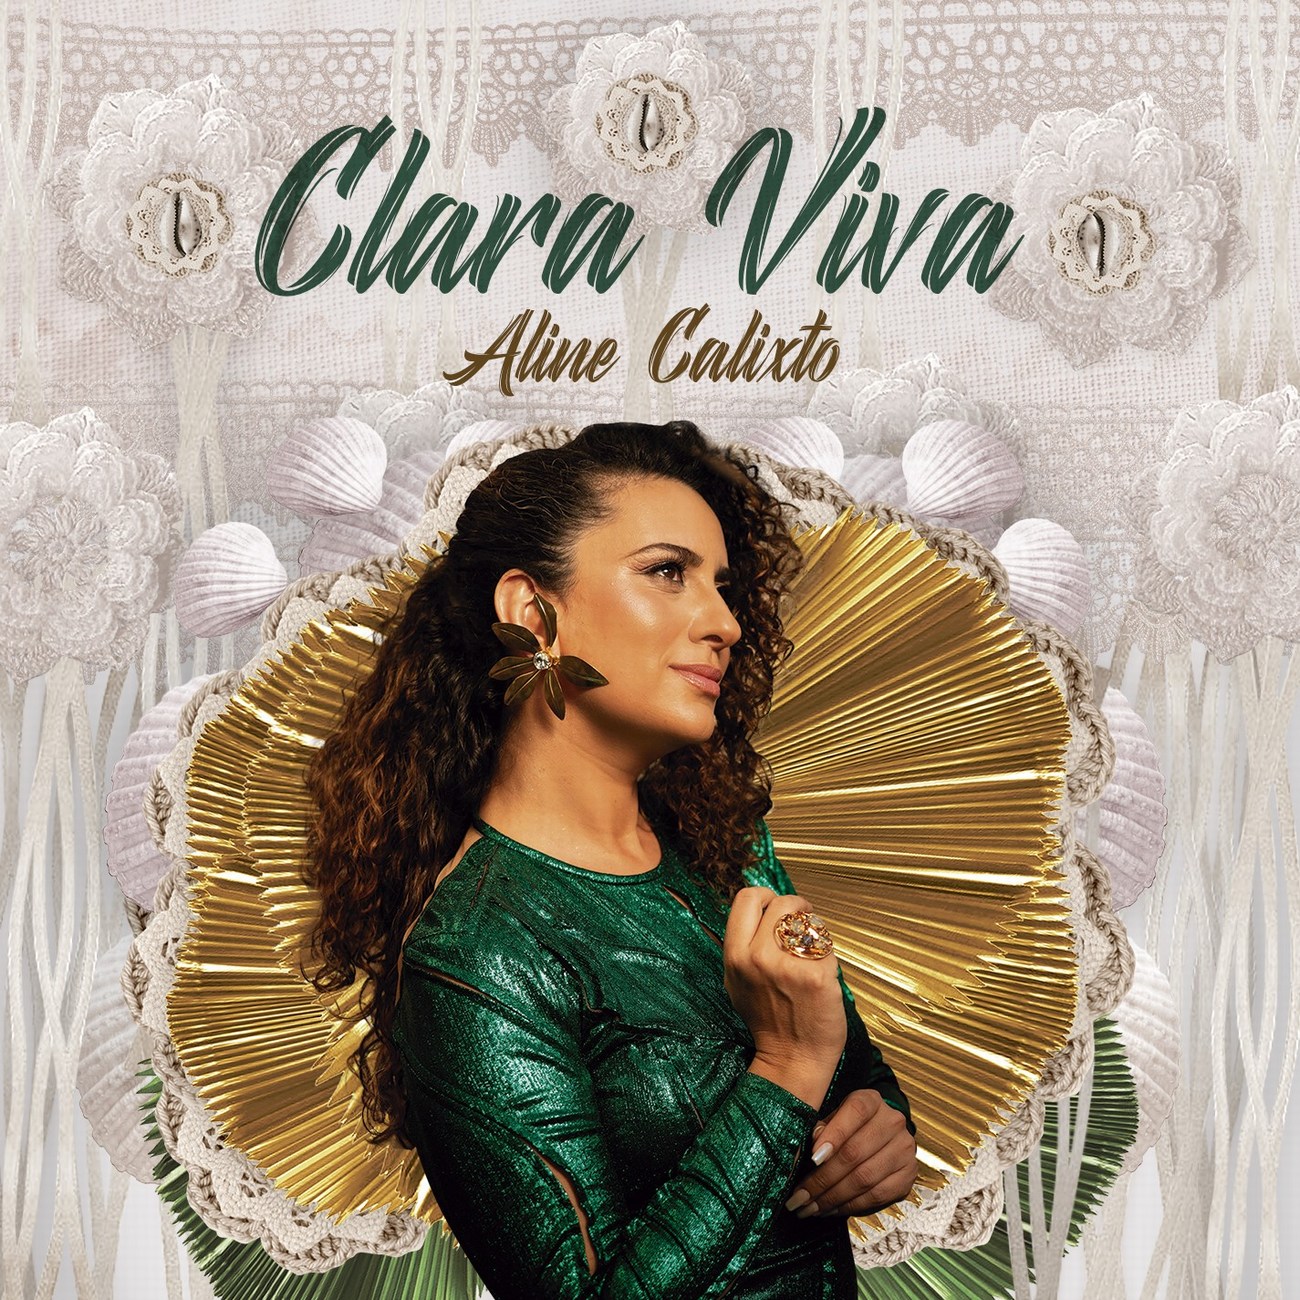 revistaprosaversoearte.com - 'Clara Viva', álbum da cantora mineira Aline Calixto